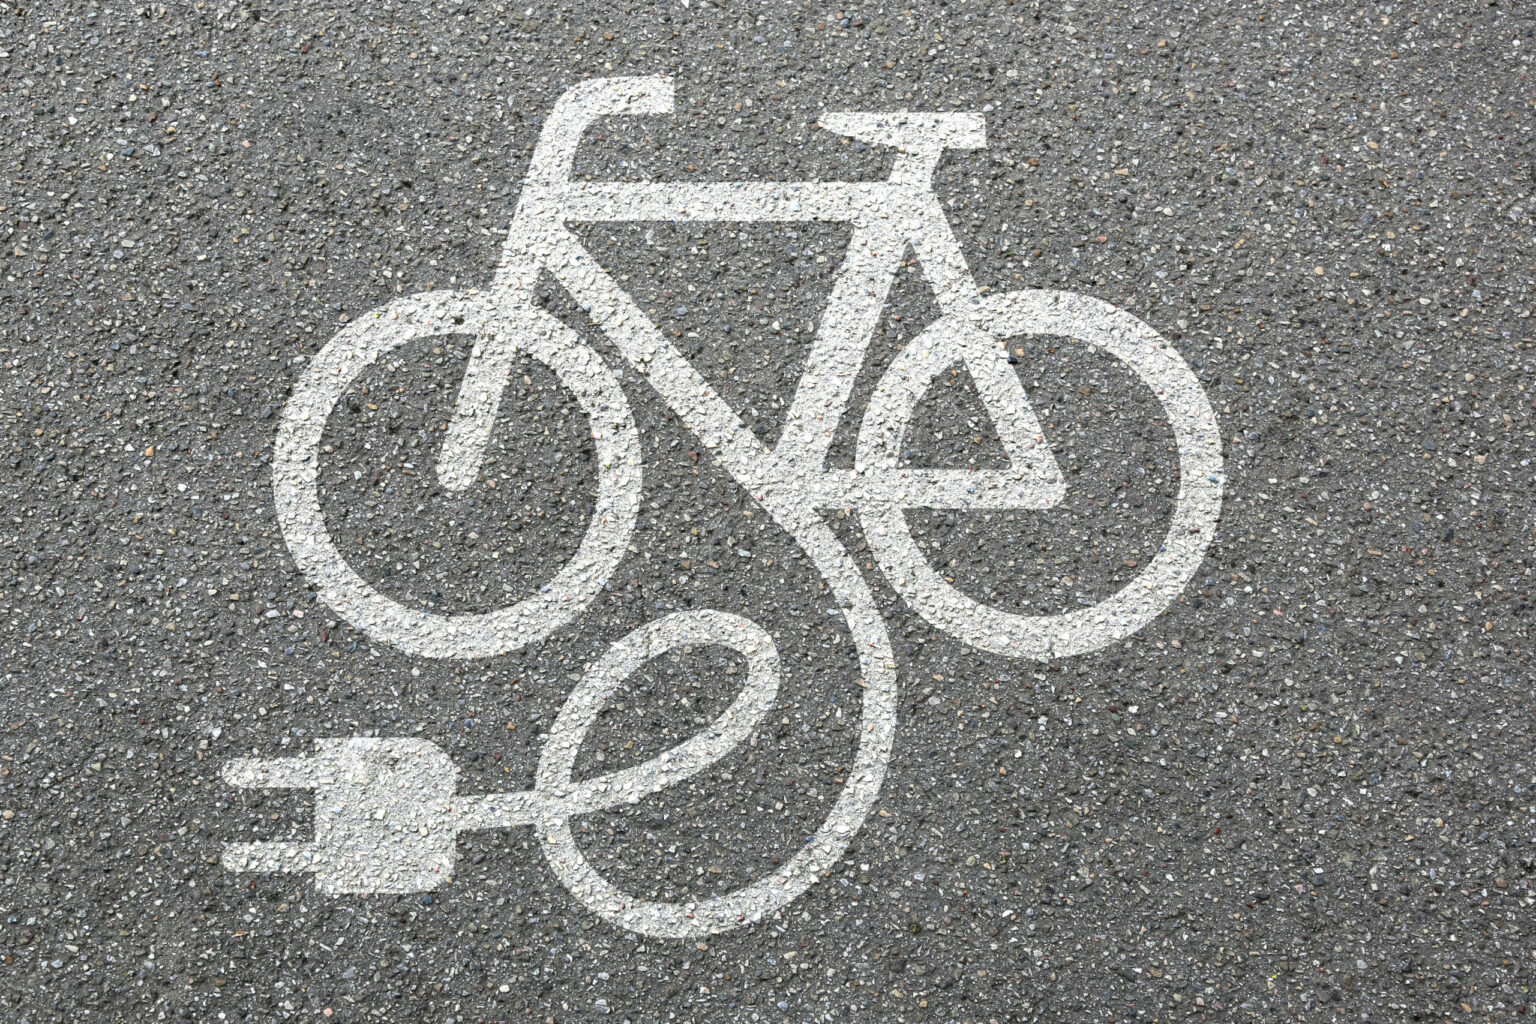 E-bike,E,Bike,Ebike,Electric,Bike,Electro,Bicycle,Eco,Friendly